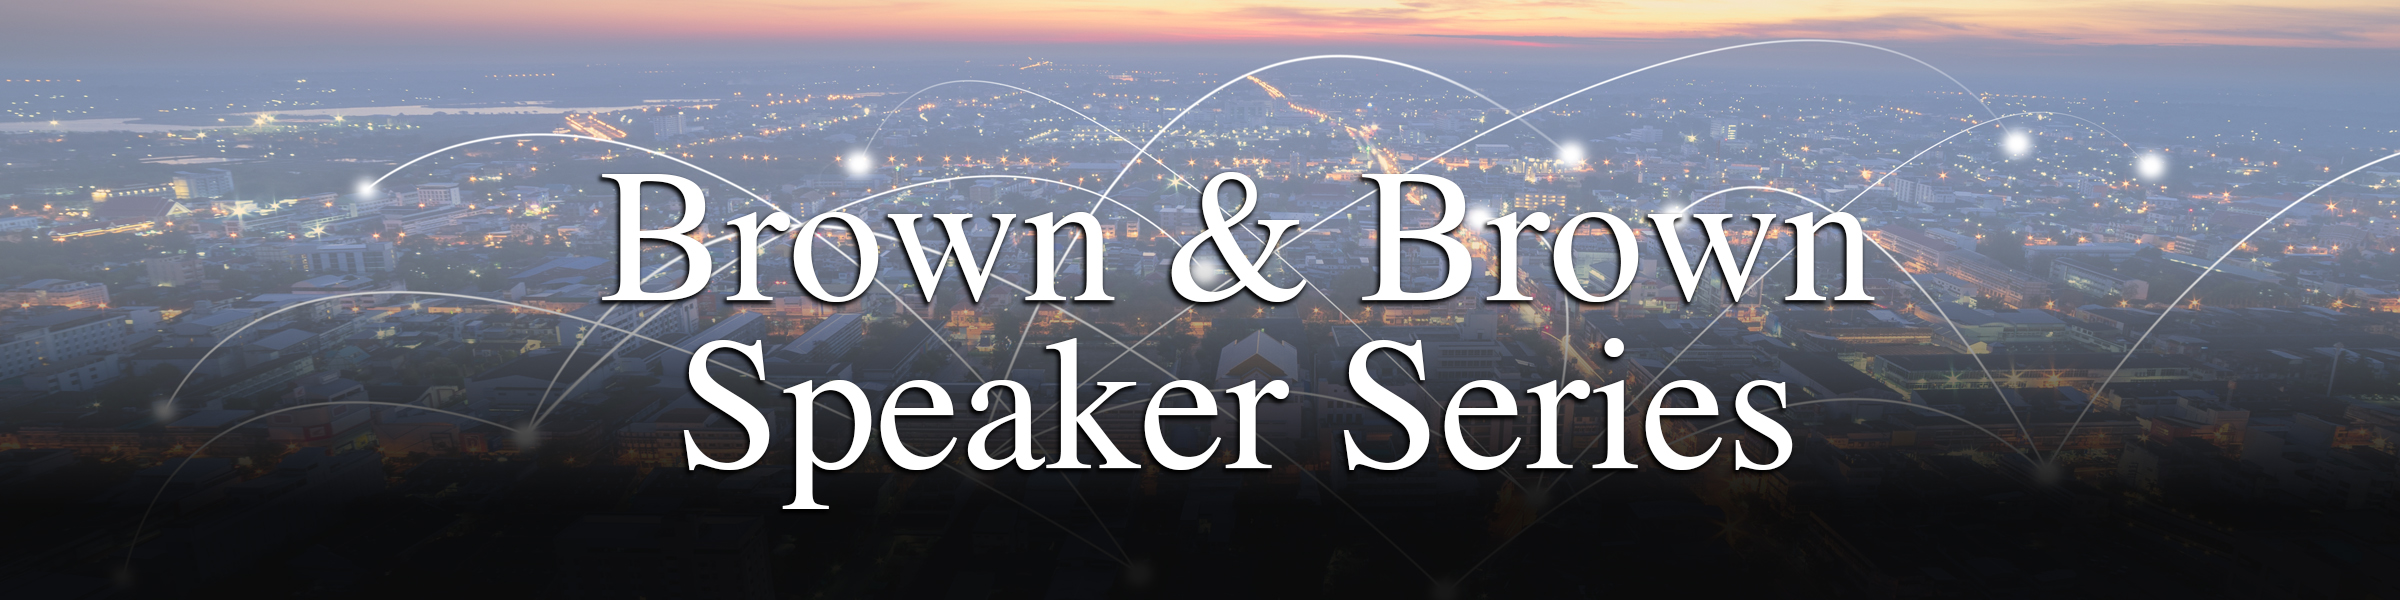 Brown & Brown Speaker Series